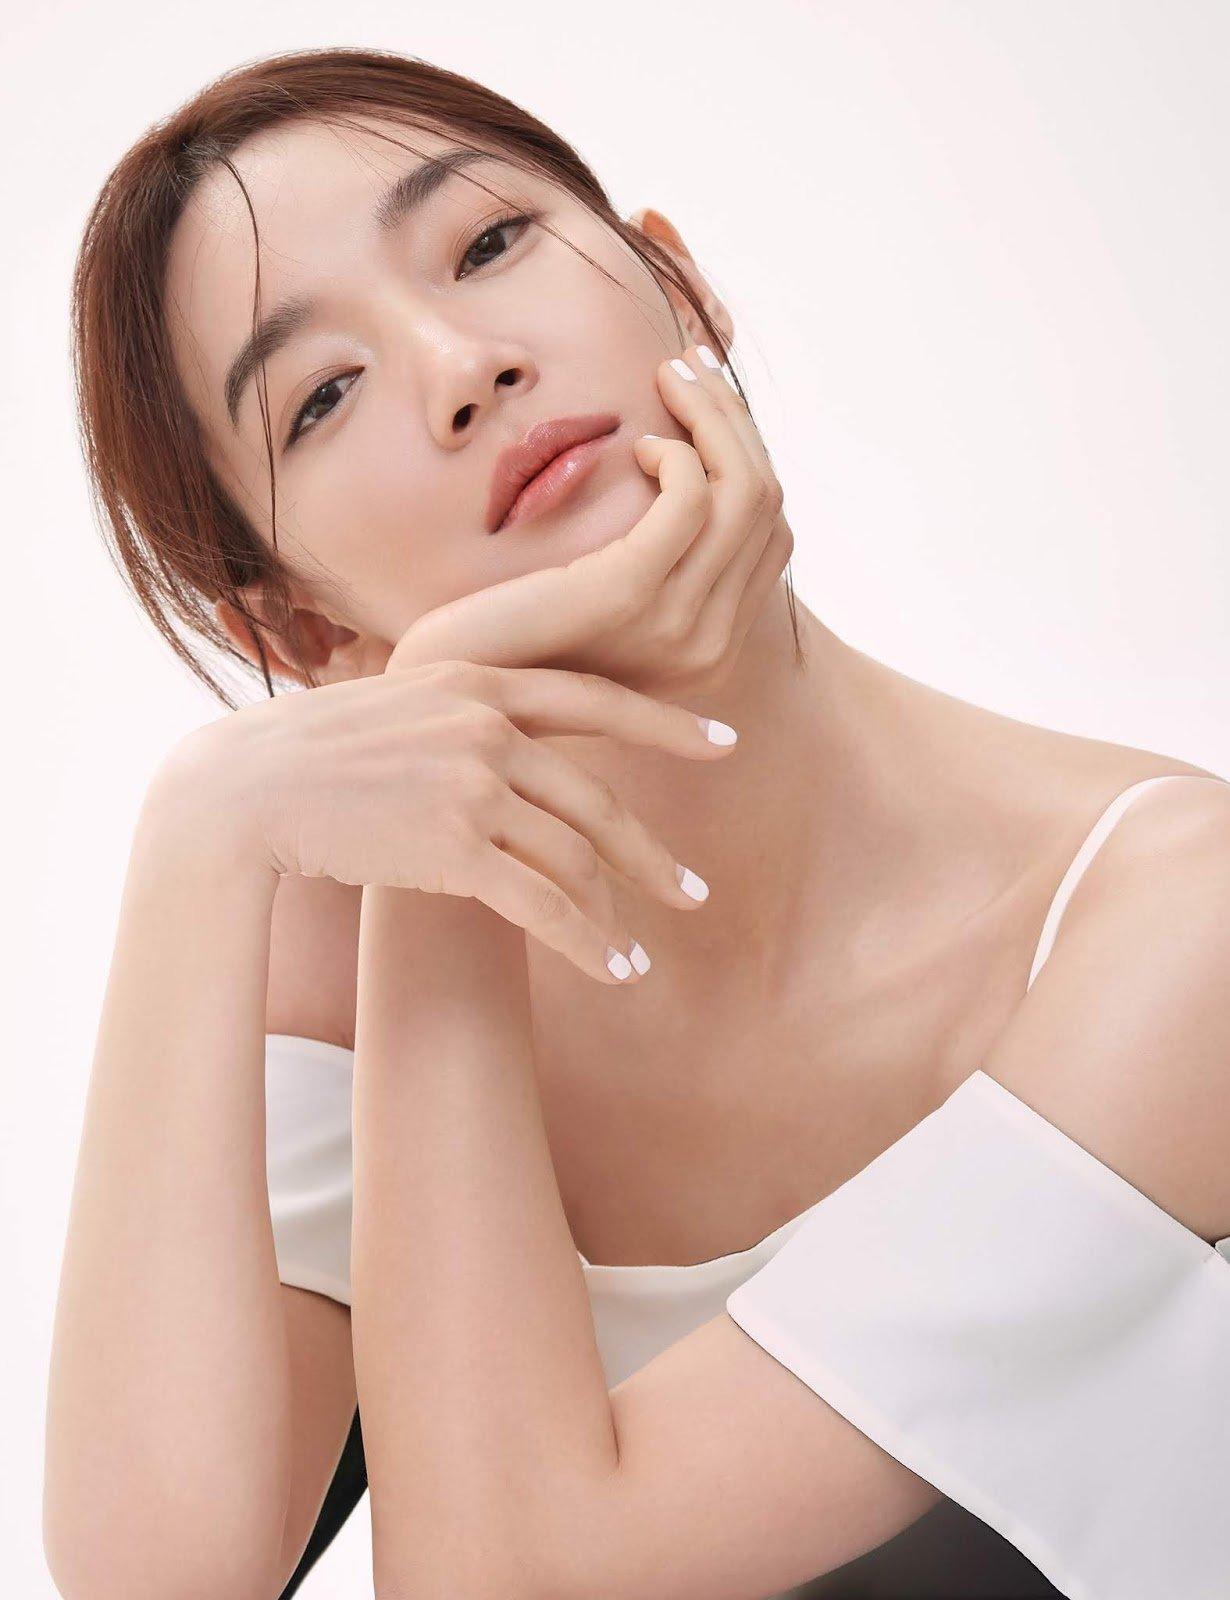 Diễn viên Shin Min Ah lên bìa tạp chí Bazaar Korea với danh phận là đại sứ Chanel Beauty (ảnh: internet)